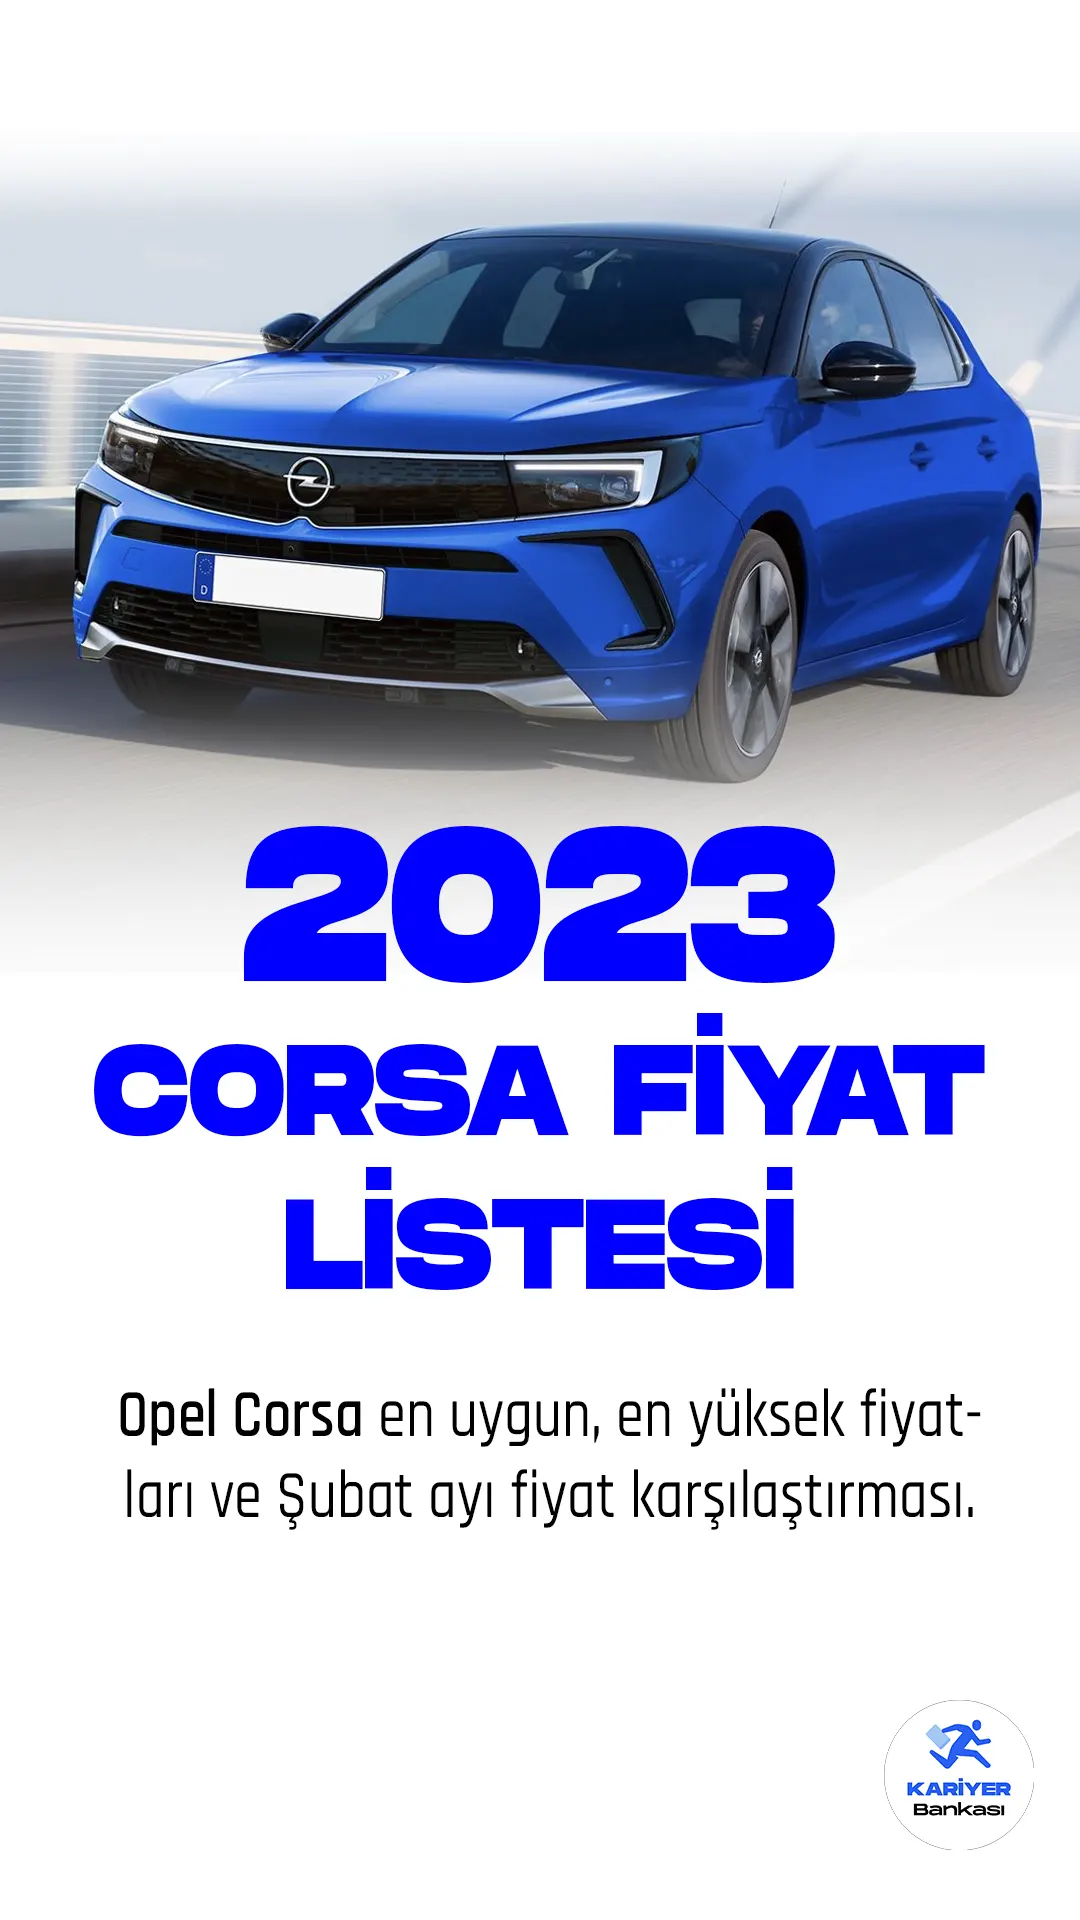 Opel Corsa fiyat listesi yayımlandı.Opel Corsa, Alman otomobil üreticisi Opel tarafından üretilen bir küçük sınıf otomobildir. İlk kez 1982 yılında piyasaya sürülen araç, Avrupa'da büyük bir başarı elde etti ve şimdiye kadar beş nesil halinde üretildi.Son nesil Opel Corsa, 2019 yılında tanıtıldı ve oldukça olumlu eleştiriler aldı. Otomobil, Opel'in PSA Grubu'na satılmasından önce geliştirildi ve Peugeot 208 ile aynı platformu paylaşıyor.